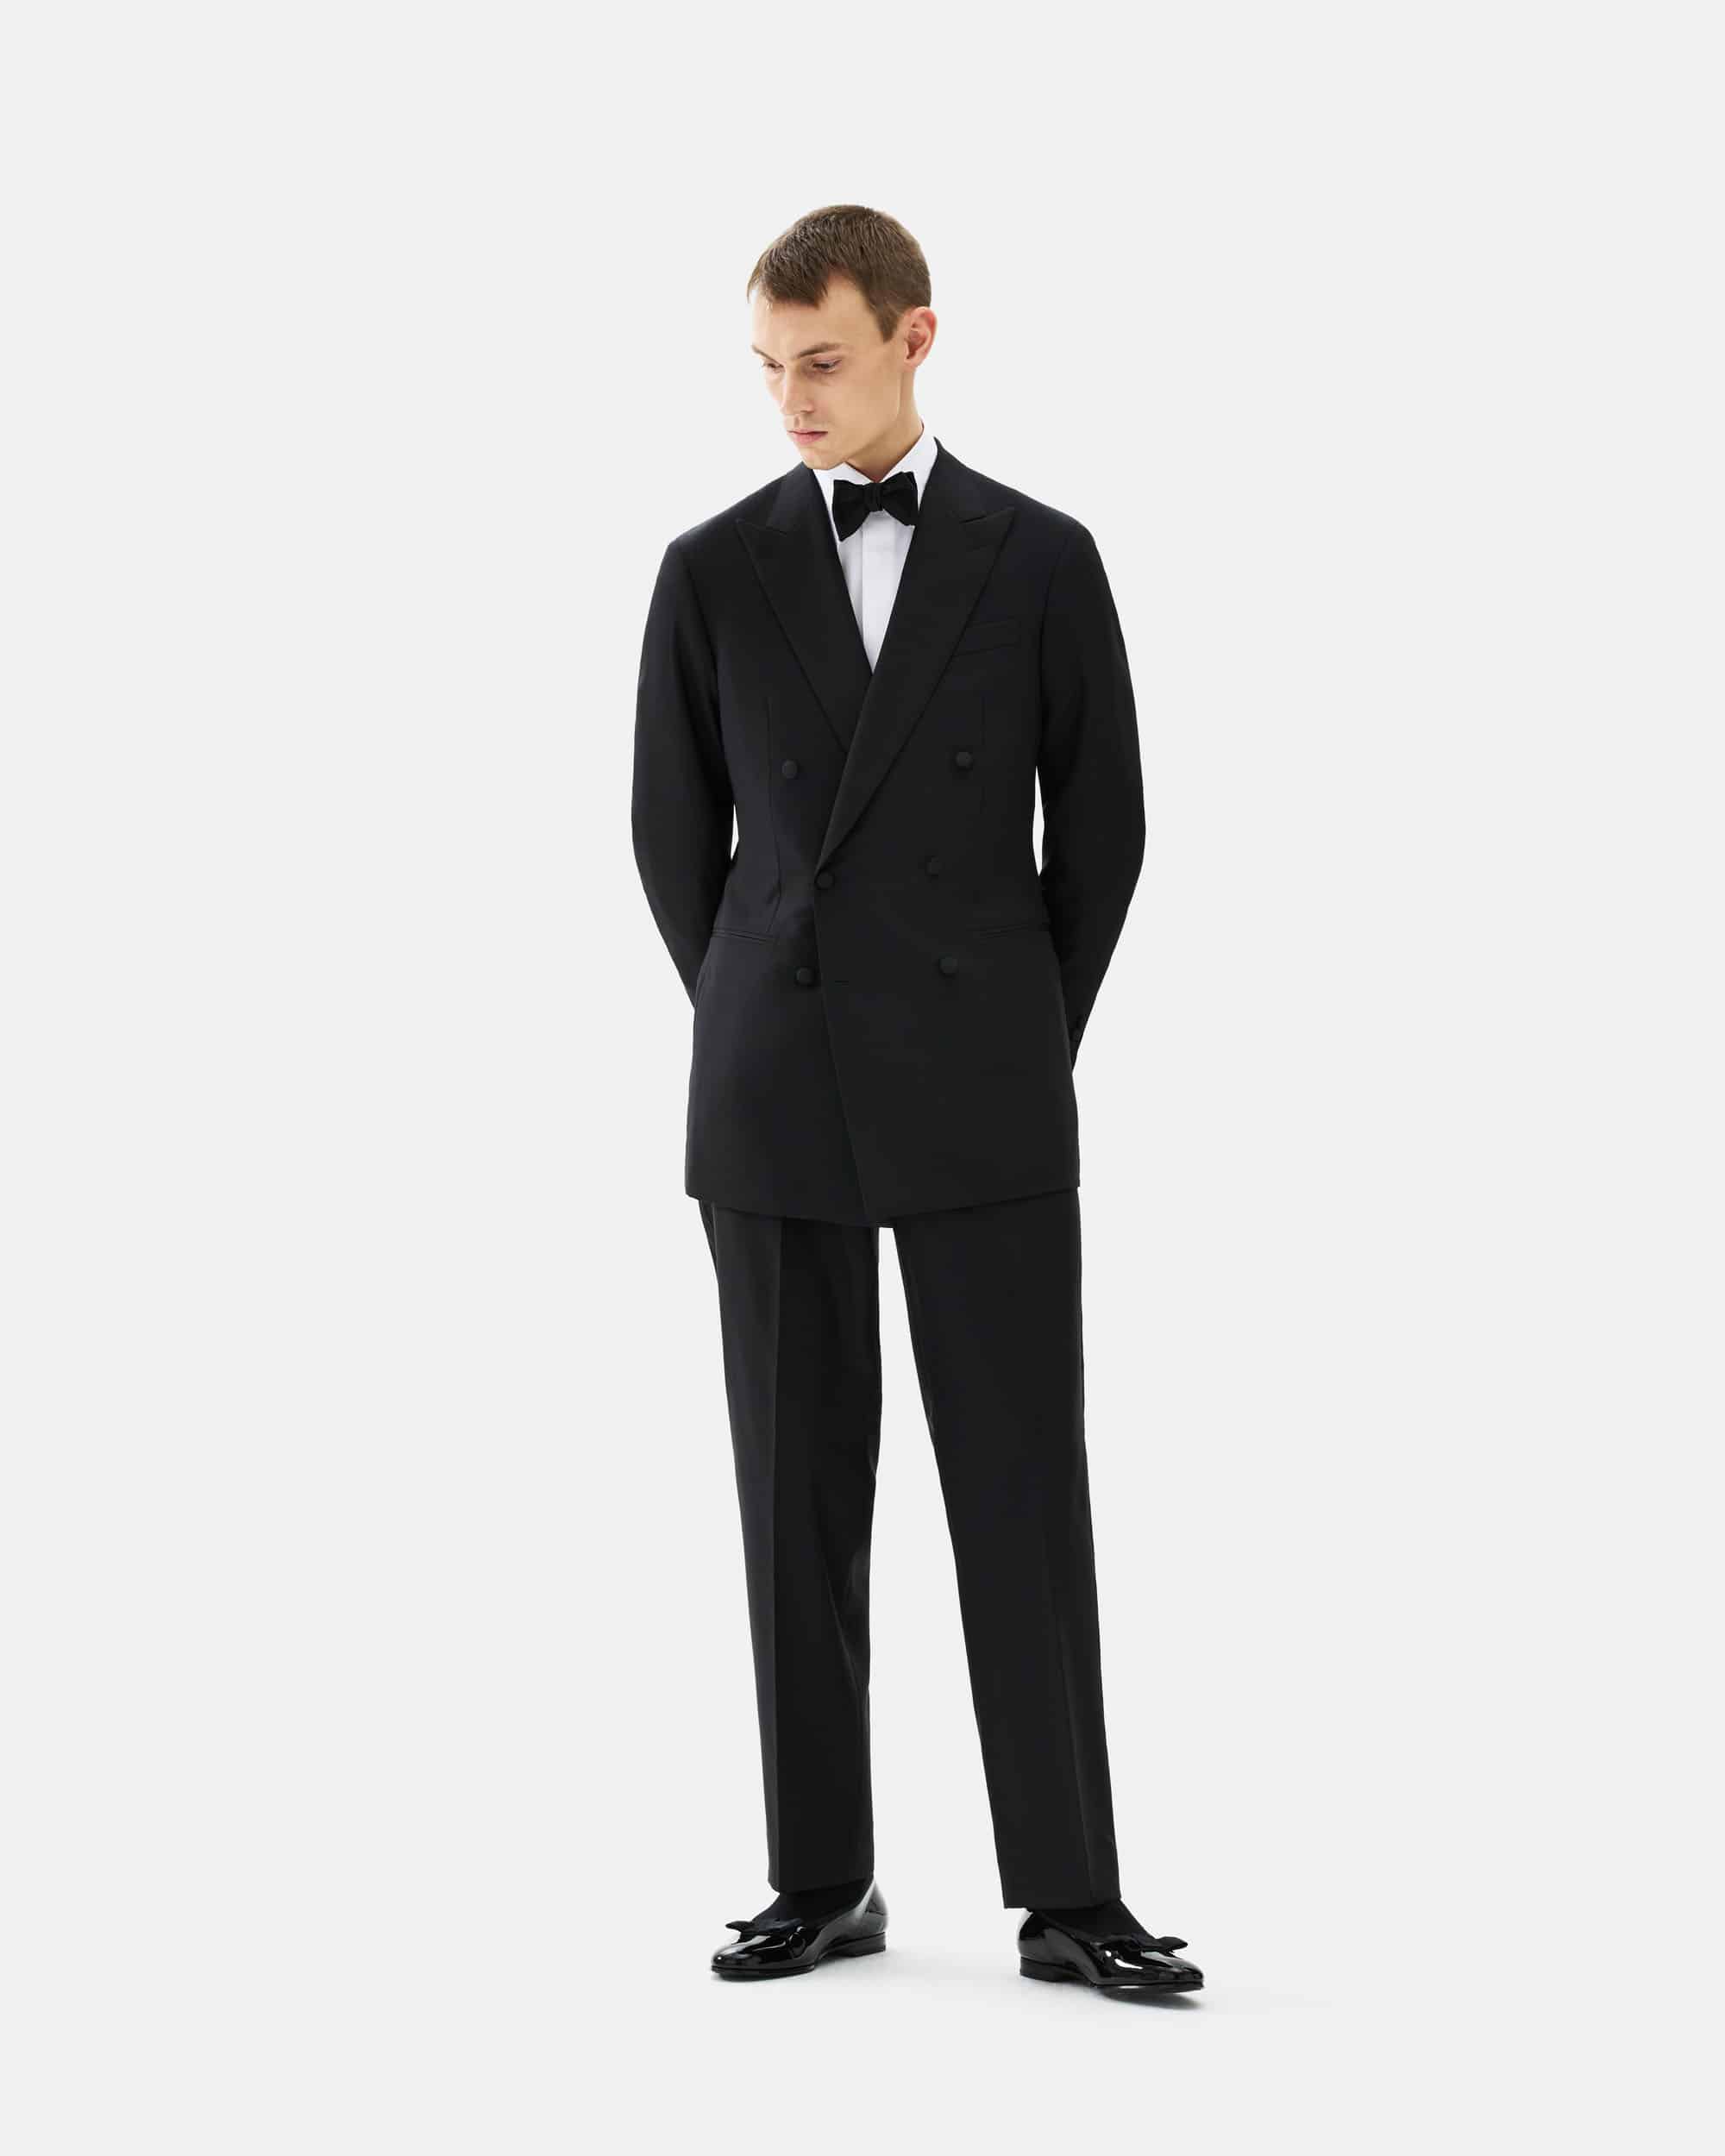 Tuxedo trouser plain weave black image 5